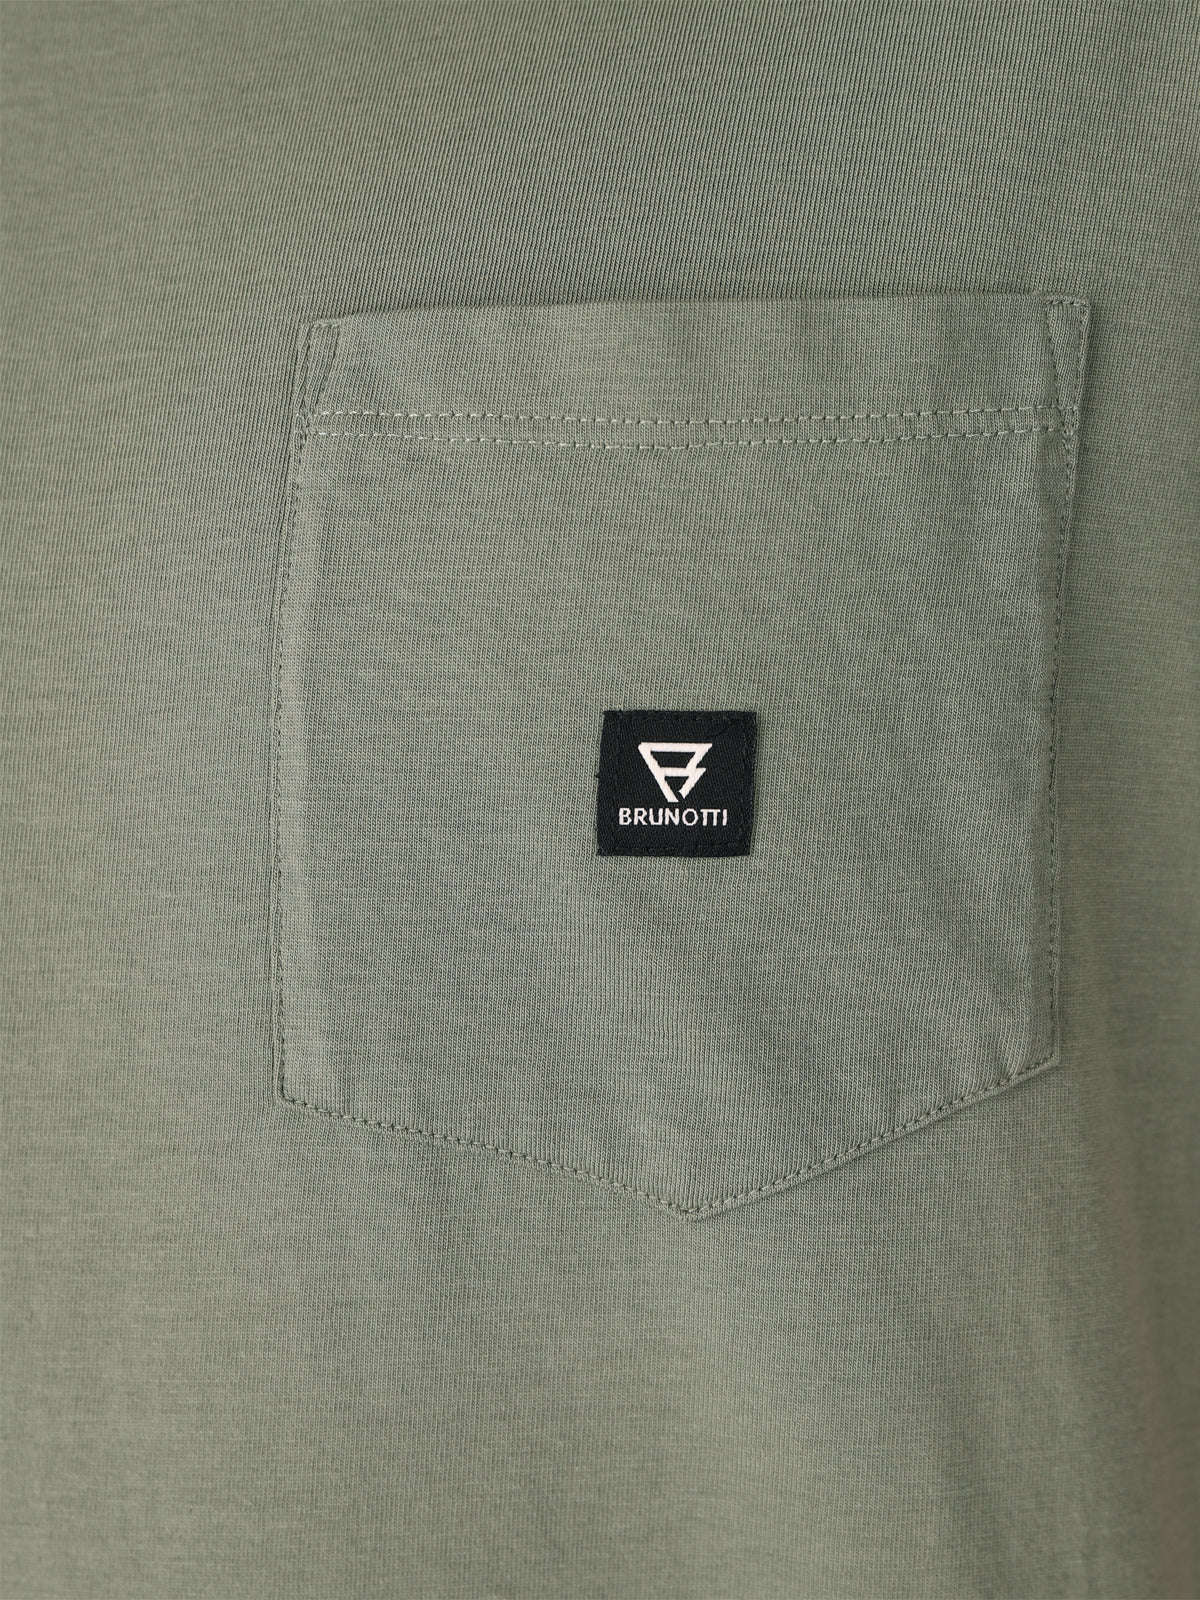 Axle-N Herren T-Shirt | Green